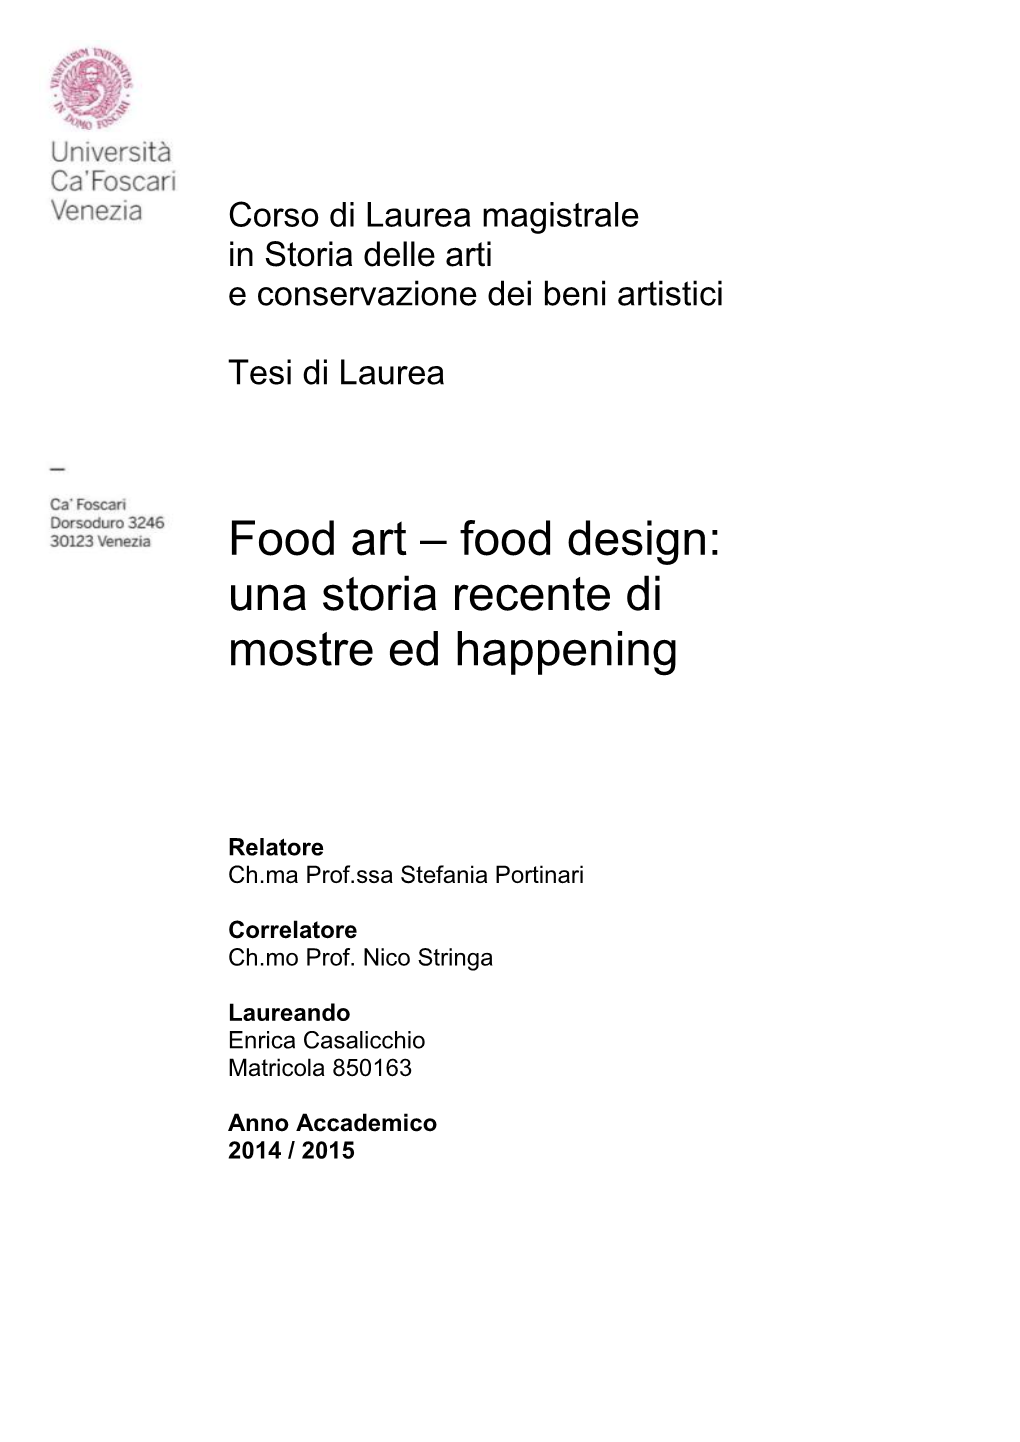 Food Art – Food Design: Una Storia Recente Di Mostre Ed Happening